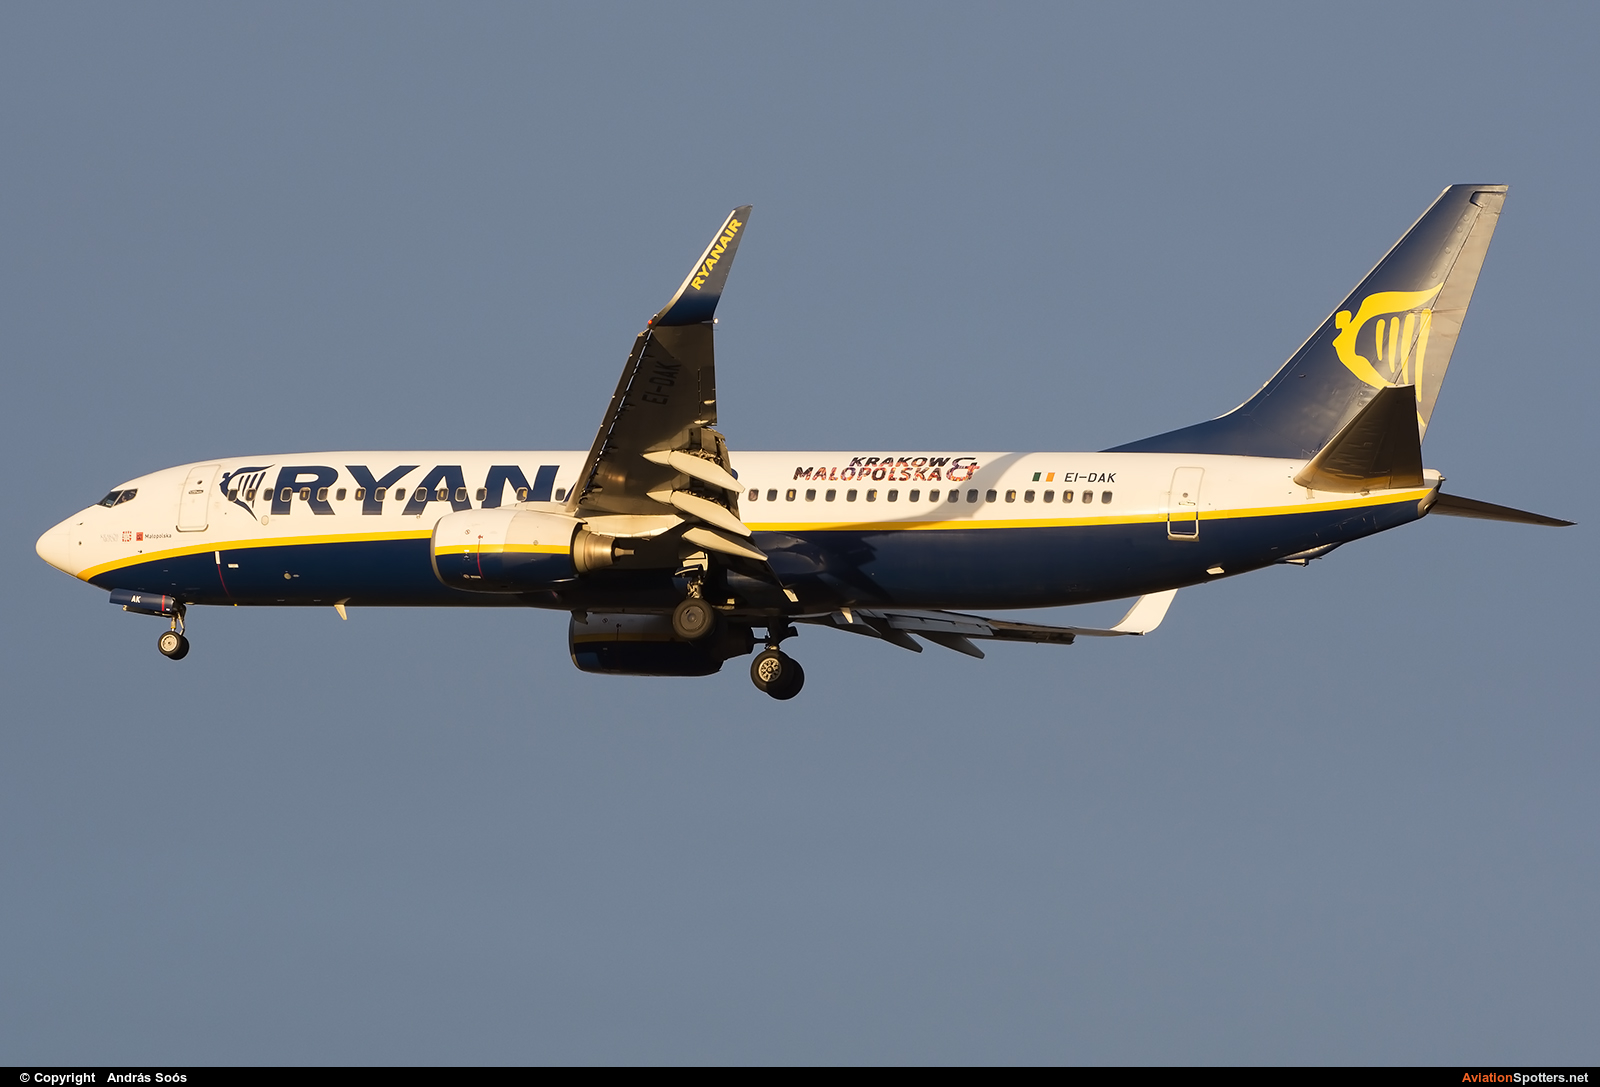 Ryanair  -  737-800  (EI-DAK) By András Soós (sas1965)